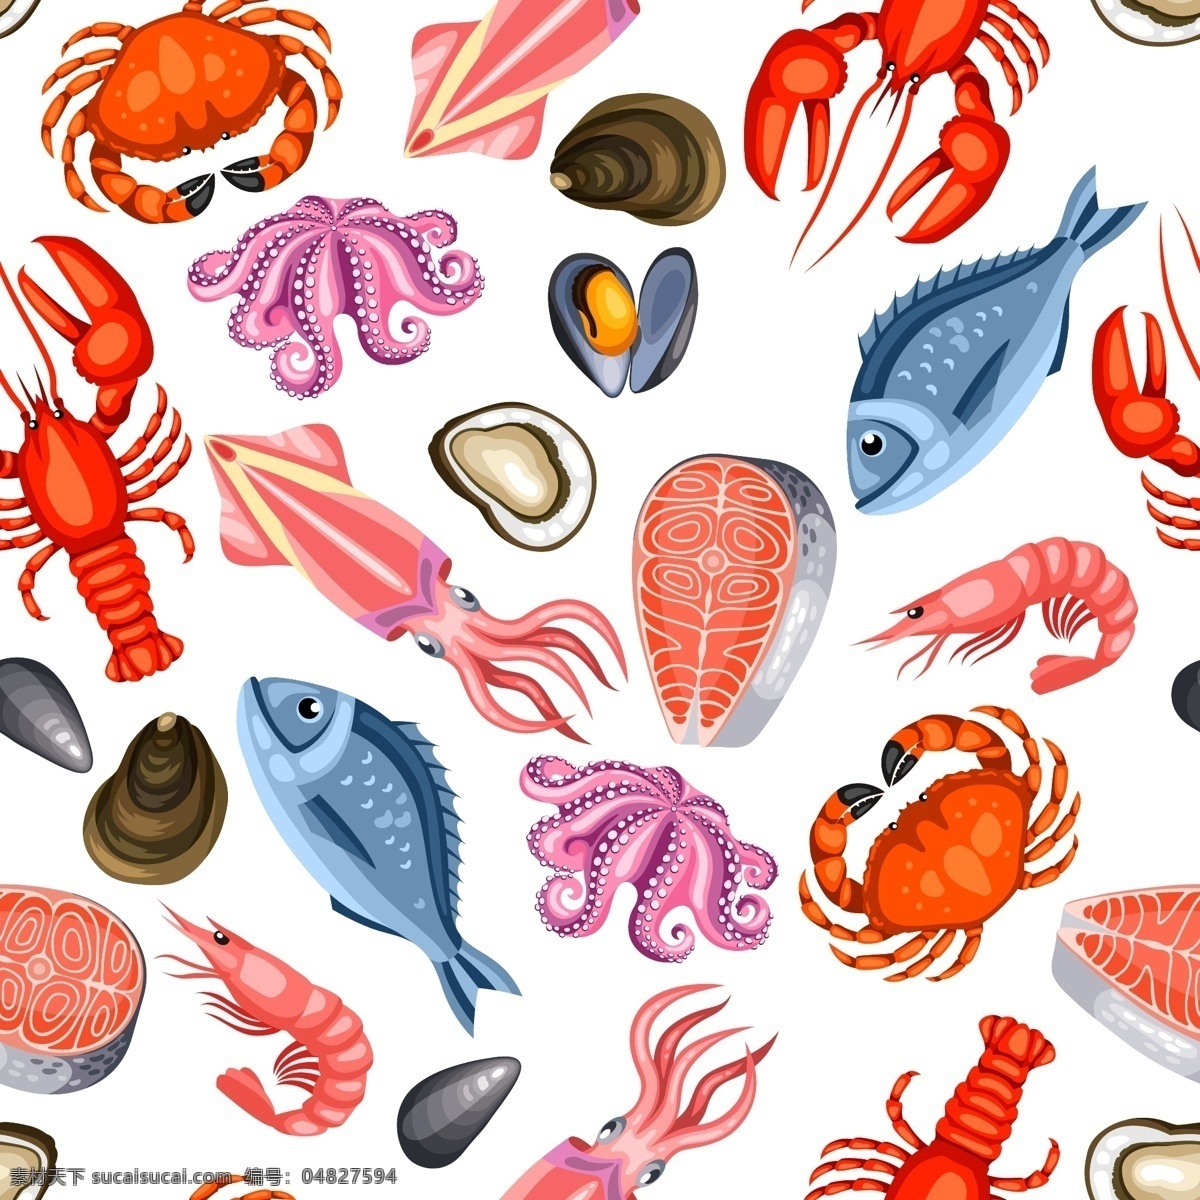 卡通海鲜食物 无缝背景 鱼排 螃蟹 贝壳 章鱼 龙虾 鱿鱼 海洋 动物 海鲜 矢量图 卡通设计